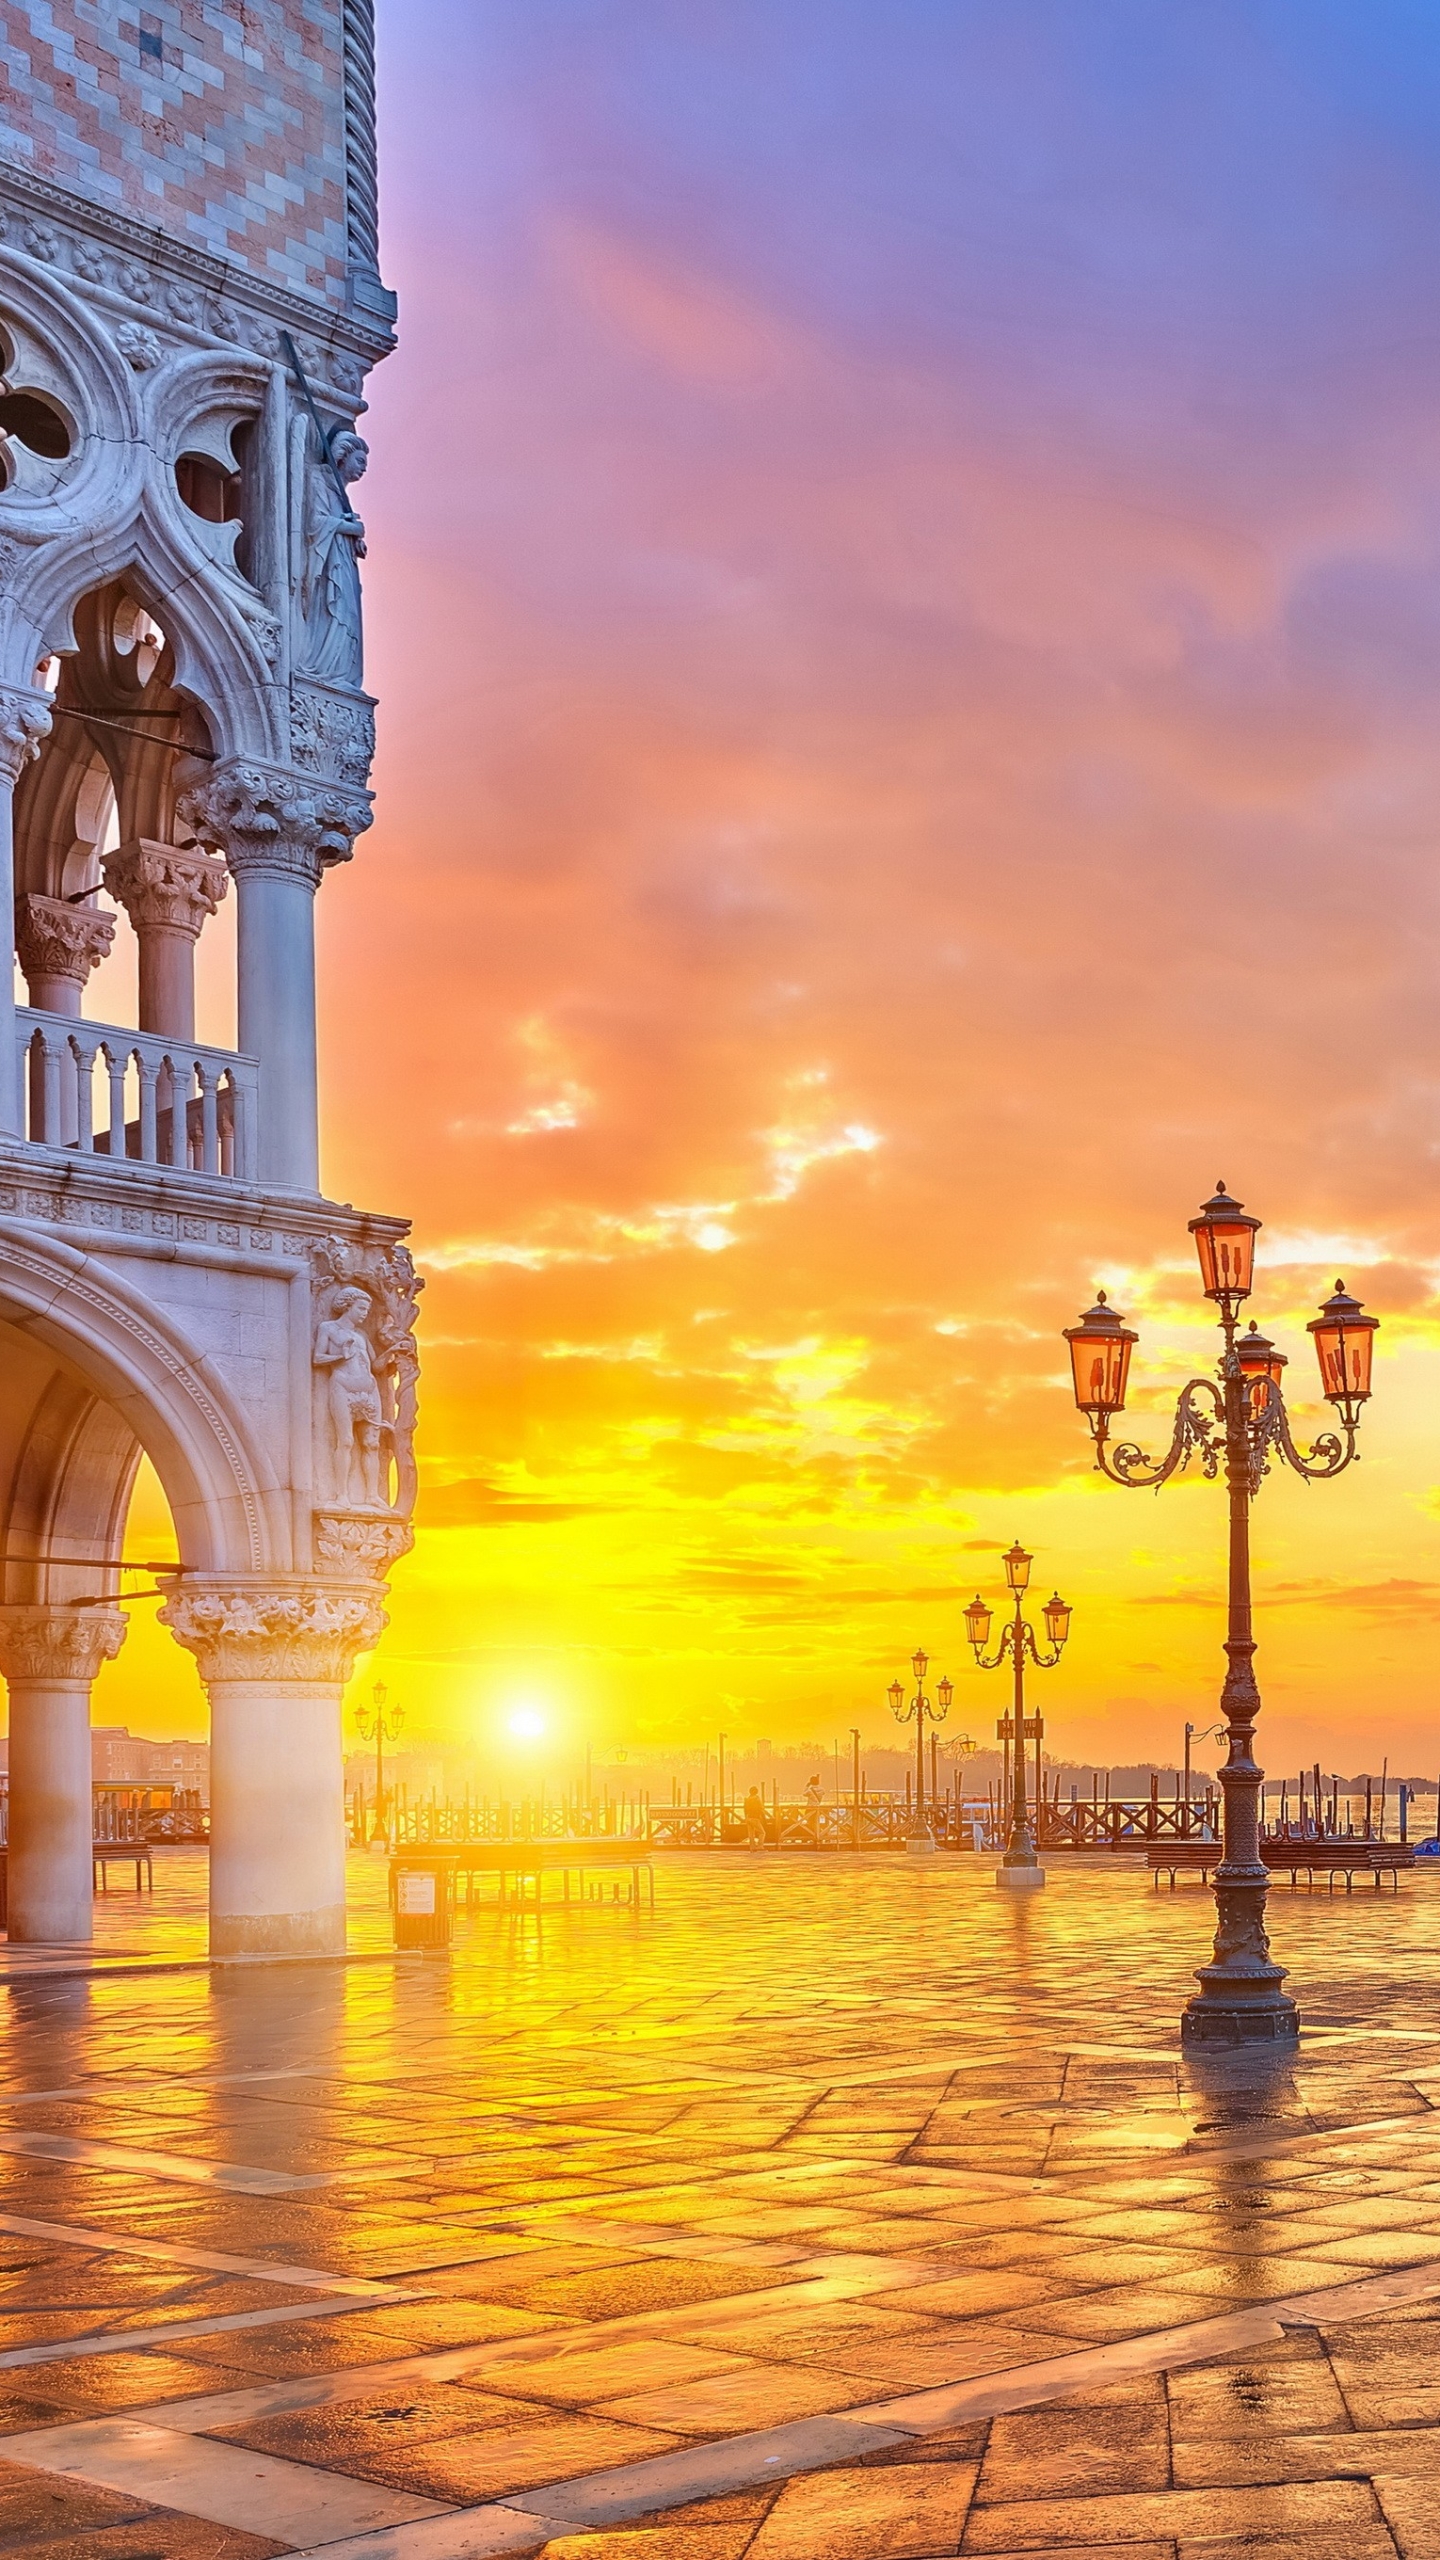 Скачать обои бесплатно Города, Италия, Венеция, Сделано Человеком картинка на рабочий стол ПК